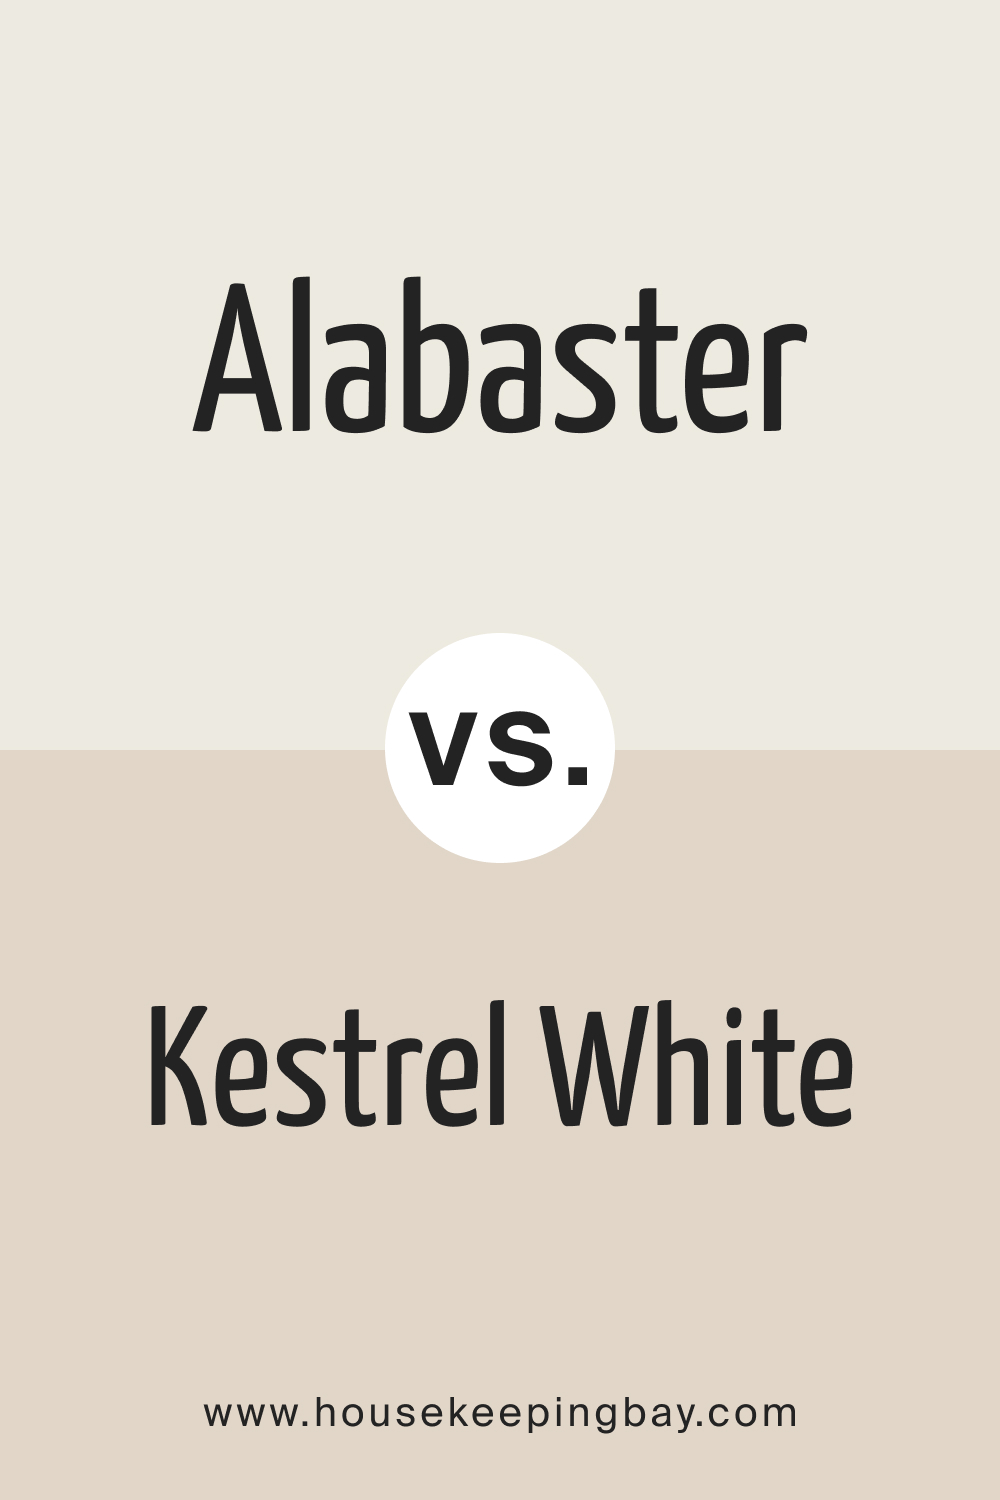 Alabaster vs. Kestrel White